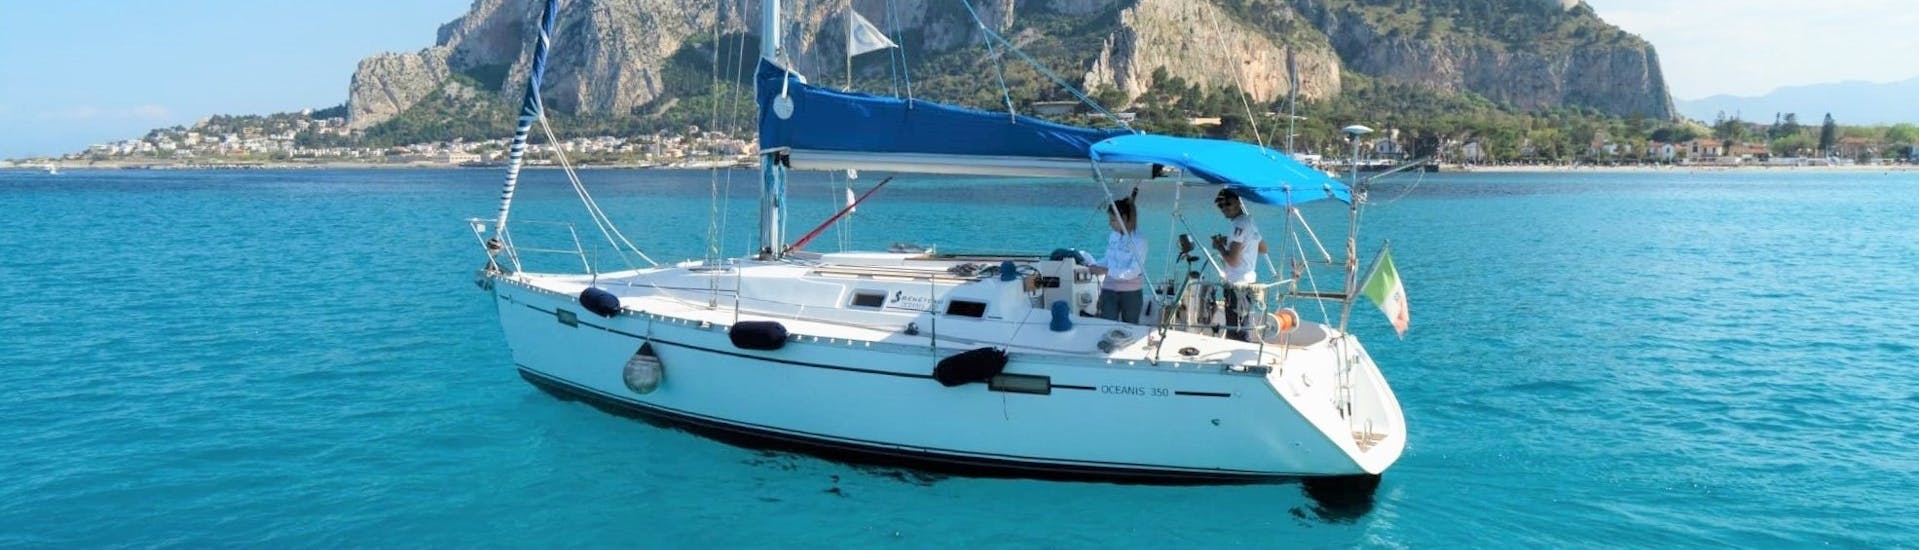 Le voilier utilisé par Seica Boat lors de l'excursion en bateau privé de Palerme à la plage de Mondello avec apéritif.